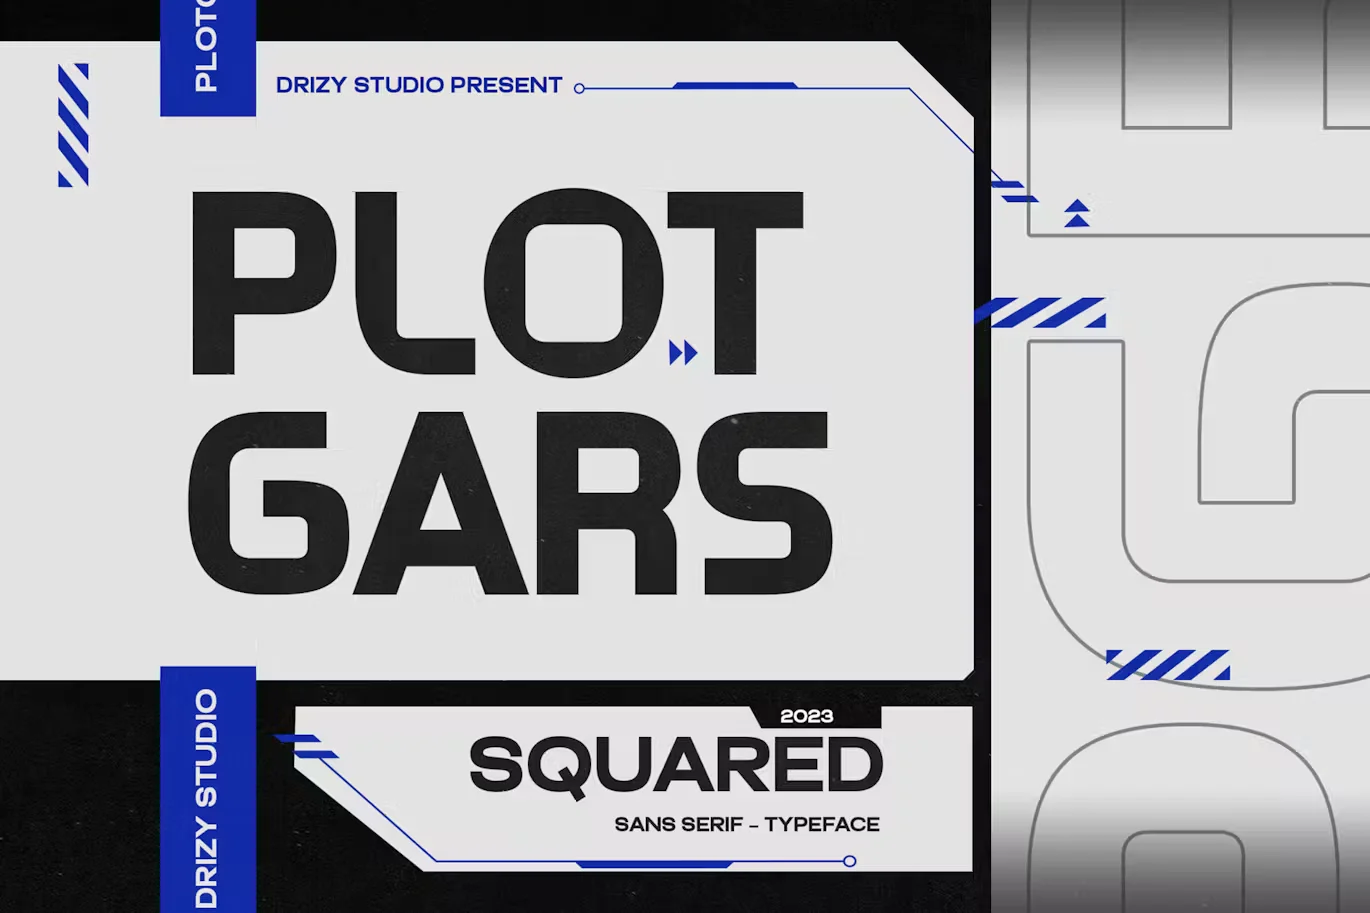 Plotgars - Sans Serif Squared Font